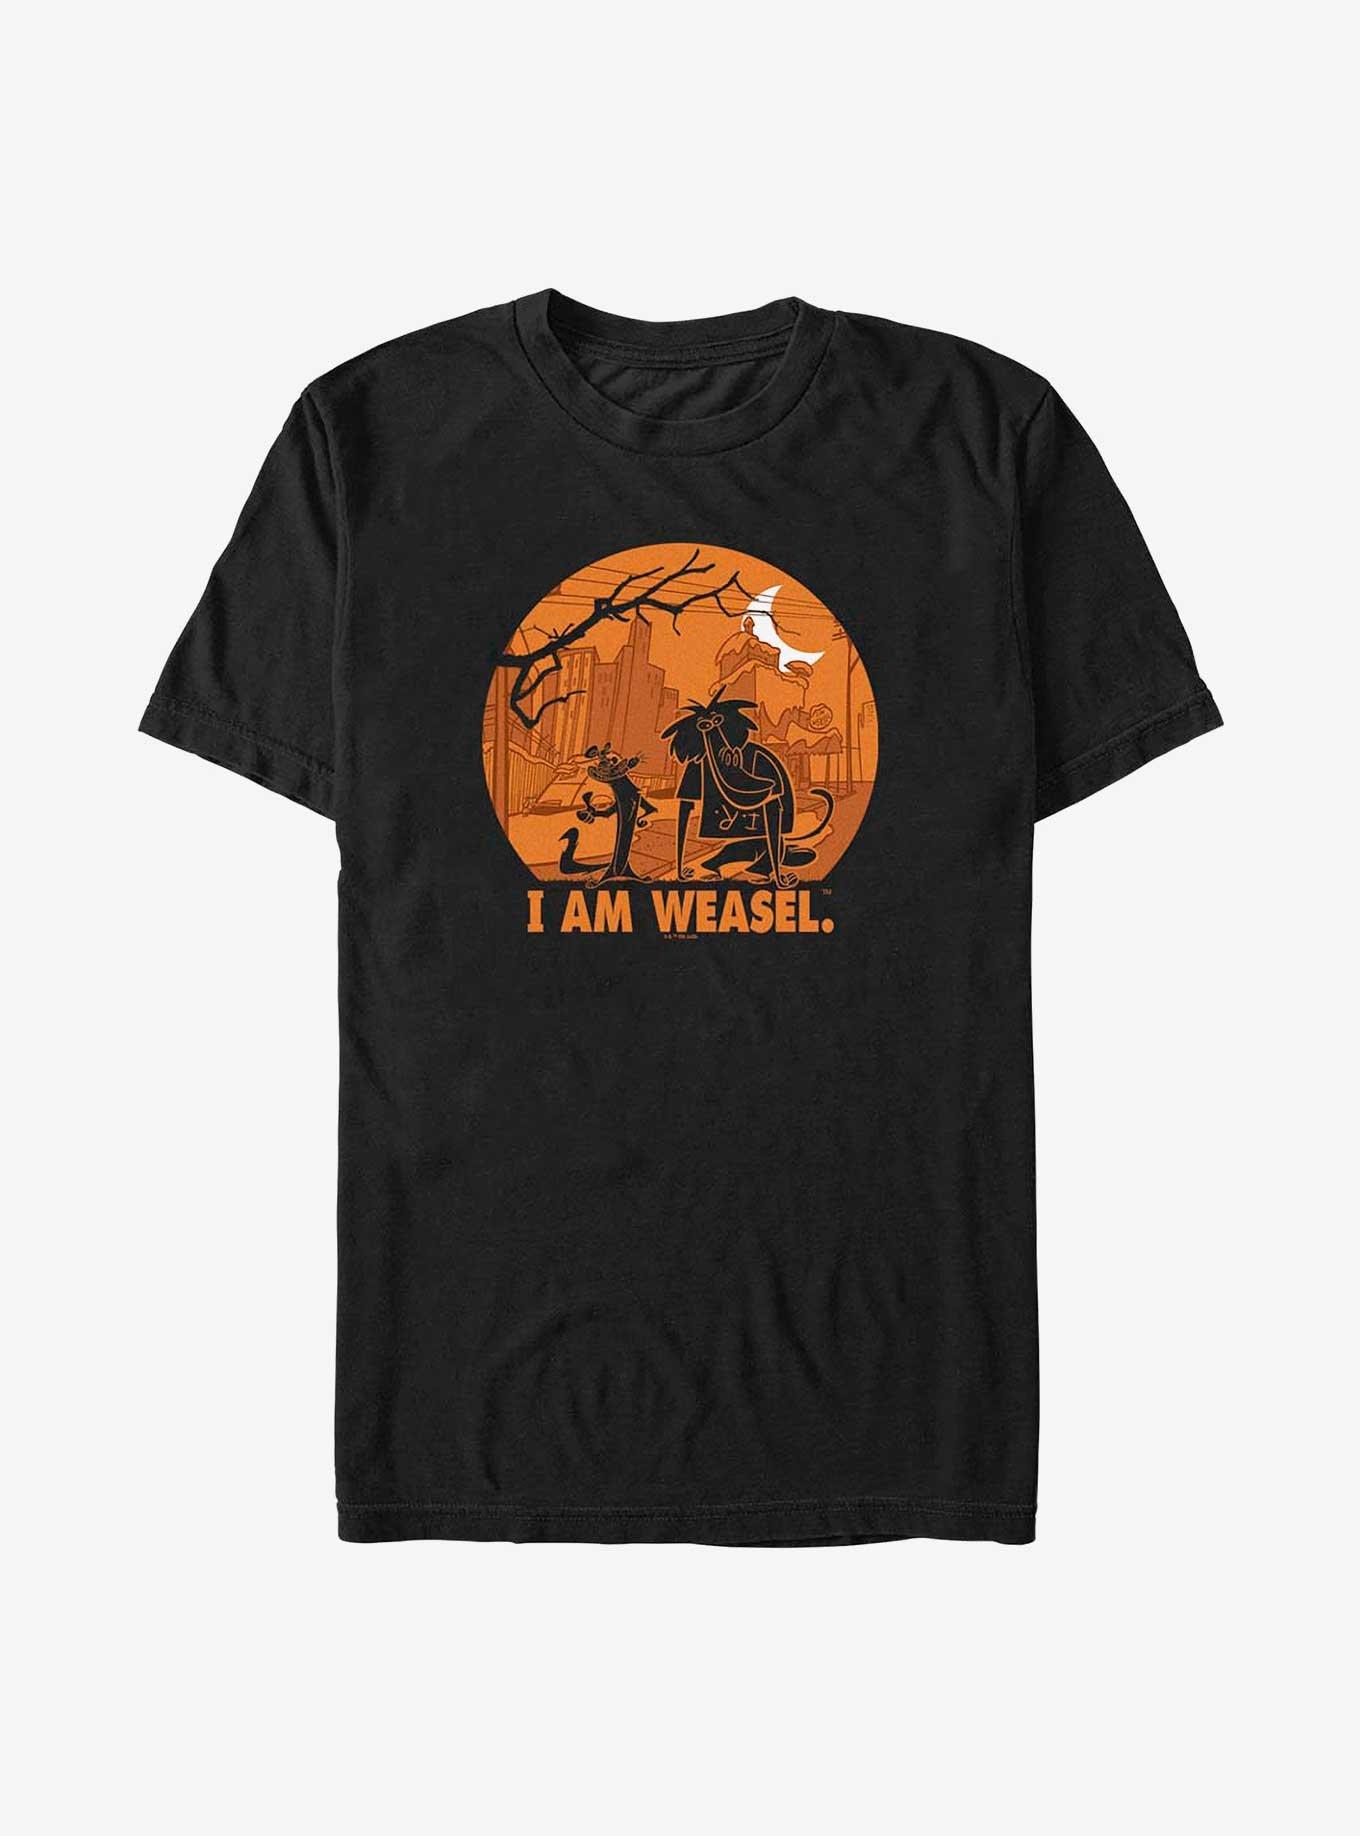 Cartoon Network I Am Weasel Haunt T-Shirt, , hi-res